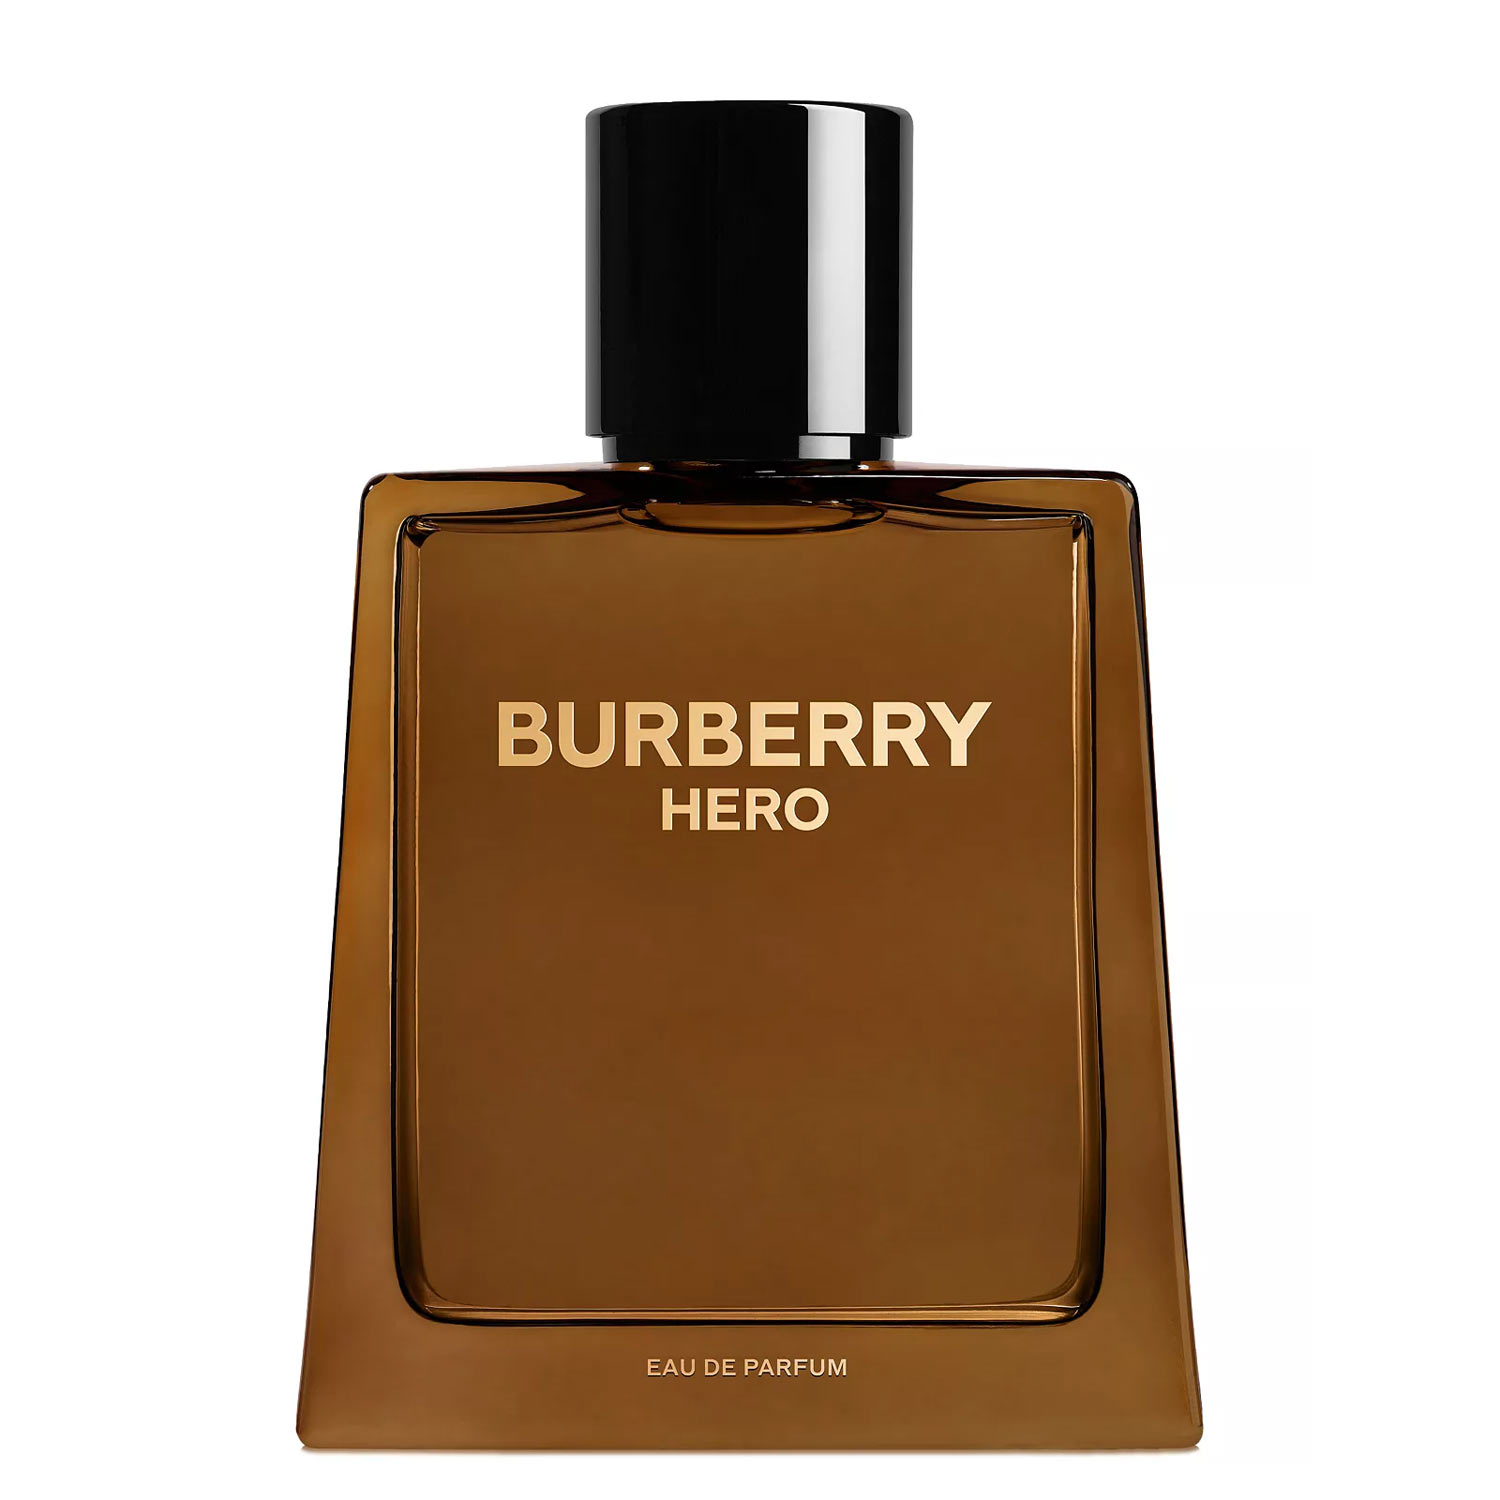 Burberry Hero Eau de Parfum Burberry Image